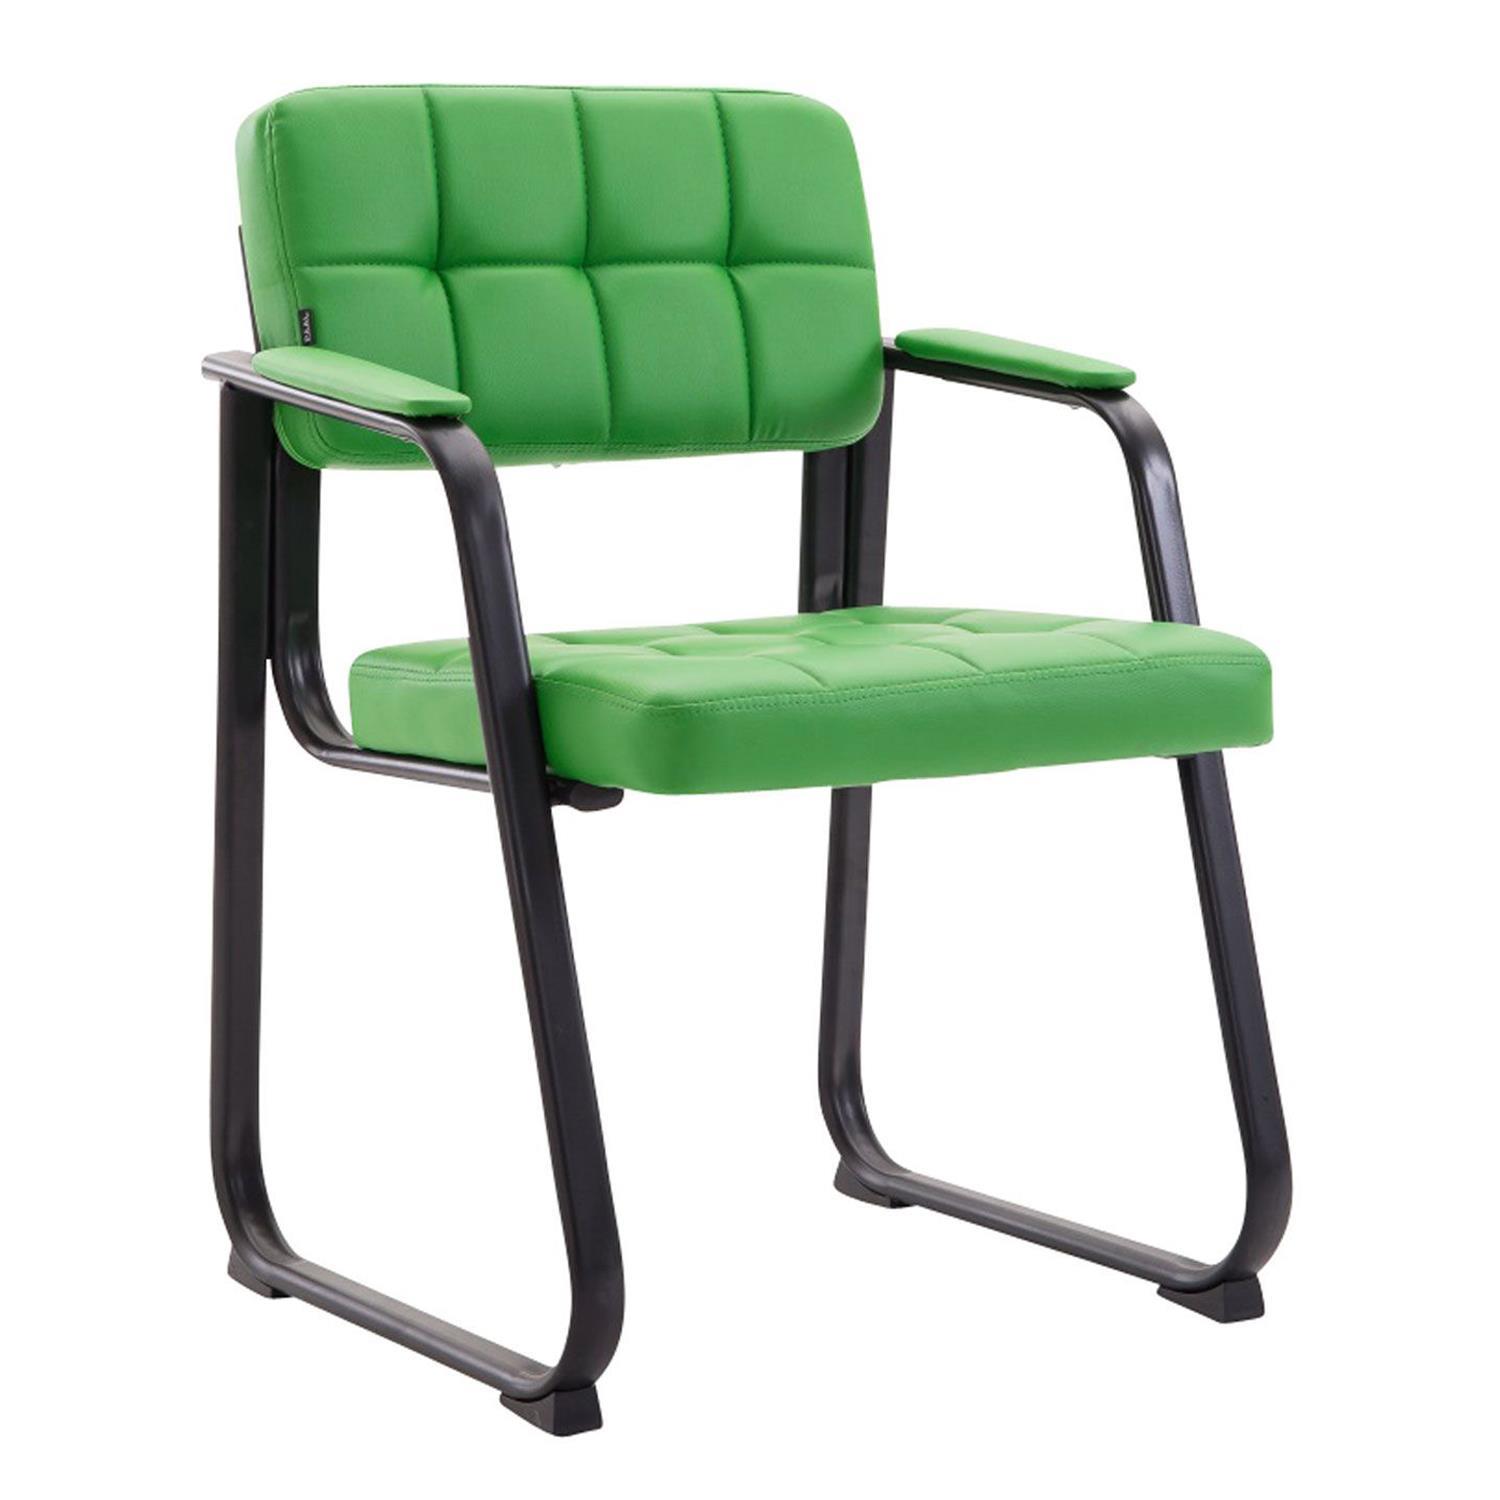 Cadeira de Visita CABANA, Design Moderno, Em Pele, Cor Verde